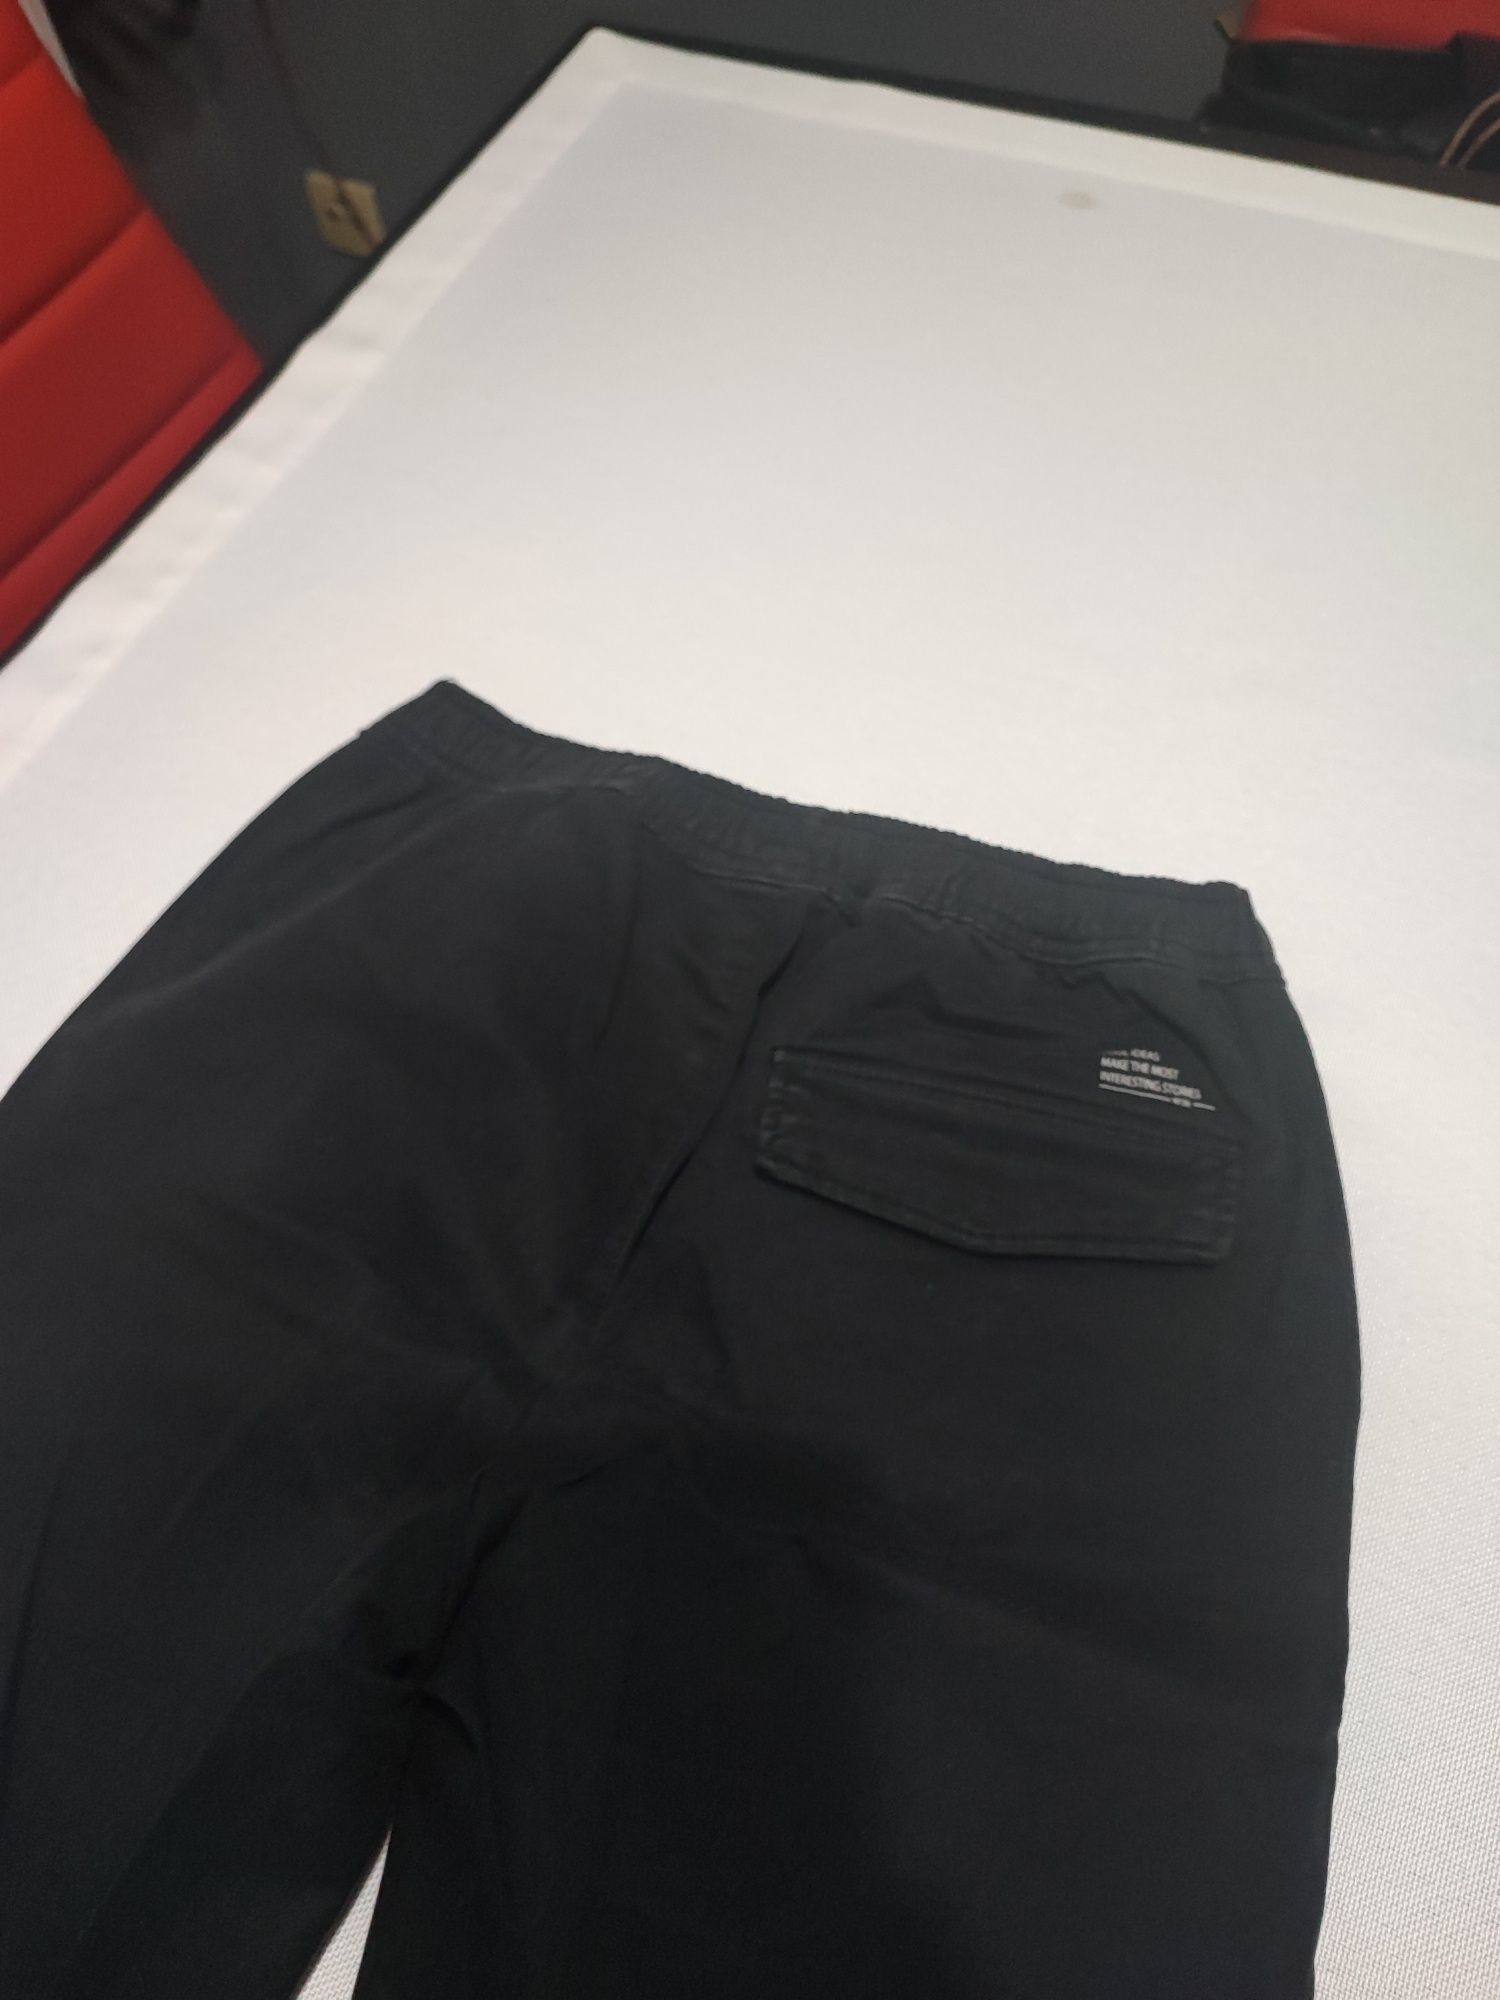 Spodnie materiałowe czarne rozmiar 152